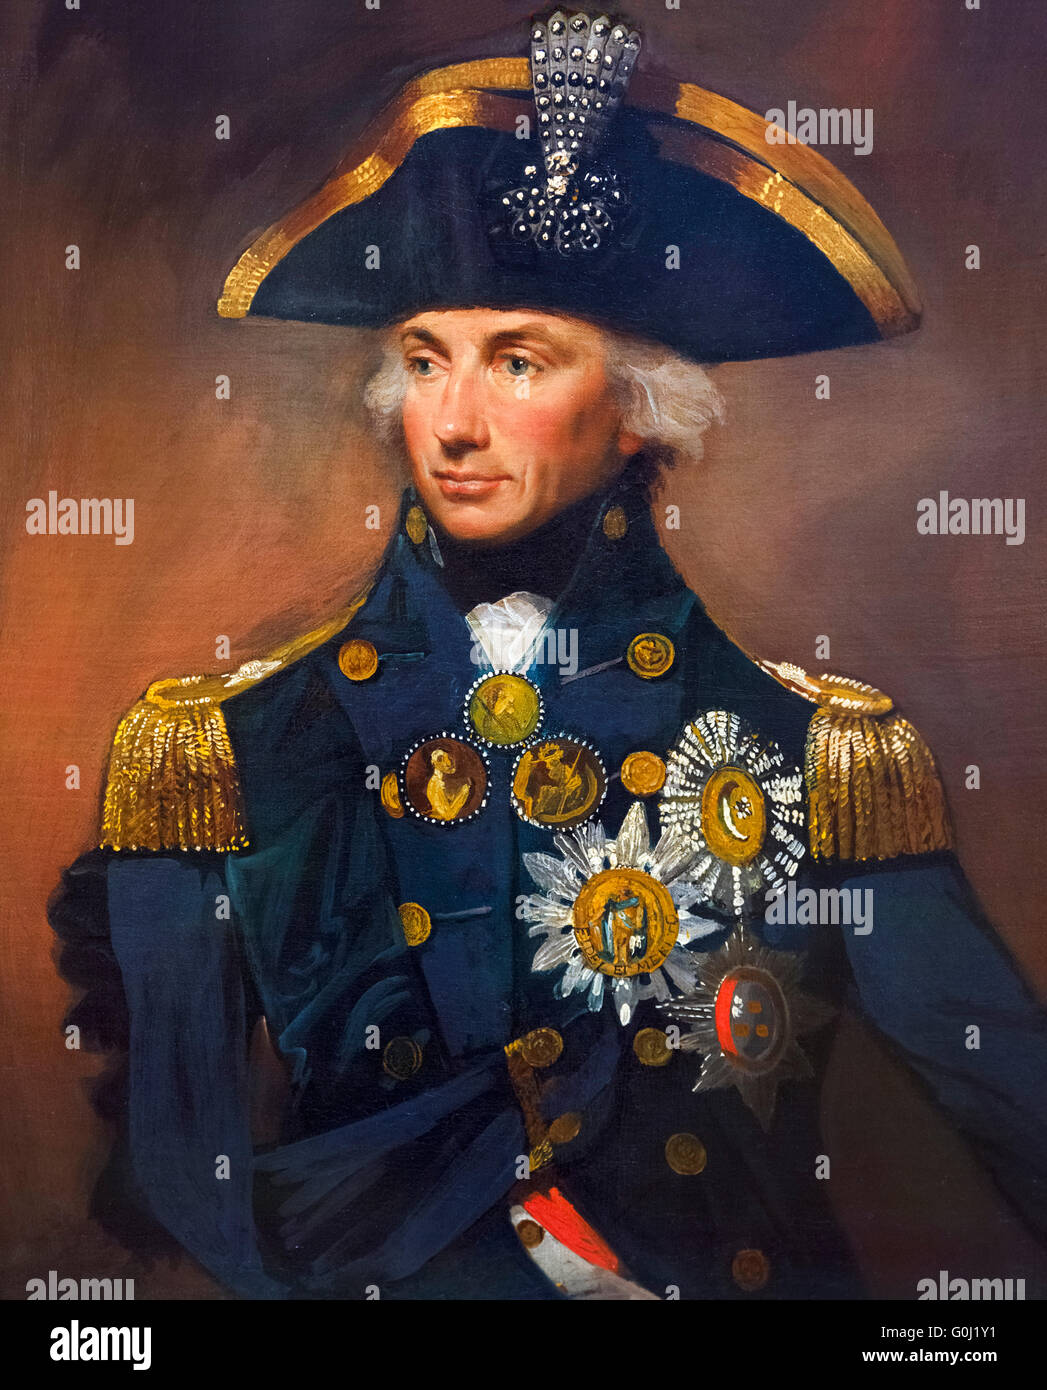 Lord Nelson. Porträt von Konteradmiral Sir Horatio Nelson (1758-1805) von Lemuel Francis Abbot, Öl auf Leinwand, 1799. Stockfoto